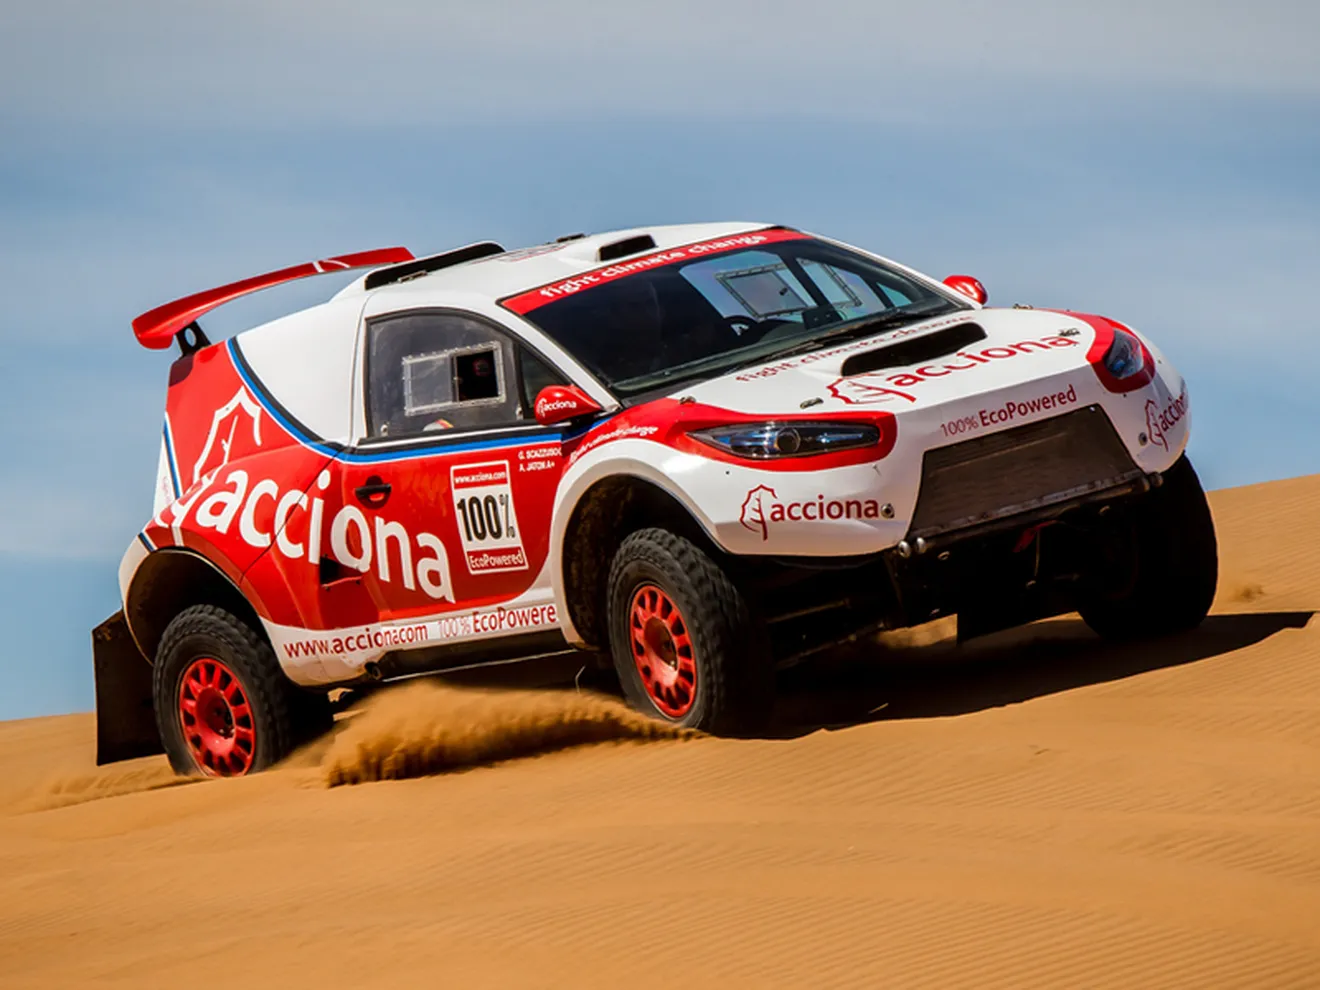 El Acciona 100% EcoPowered estará en el Dakar 2016